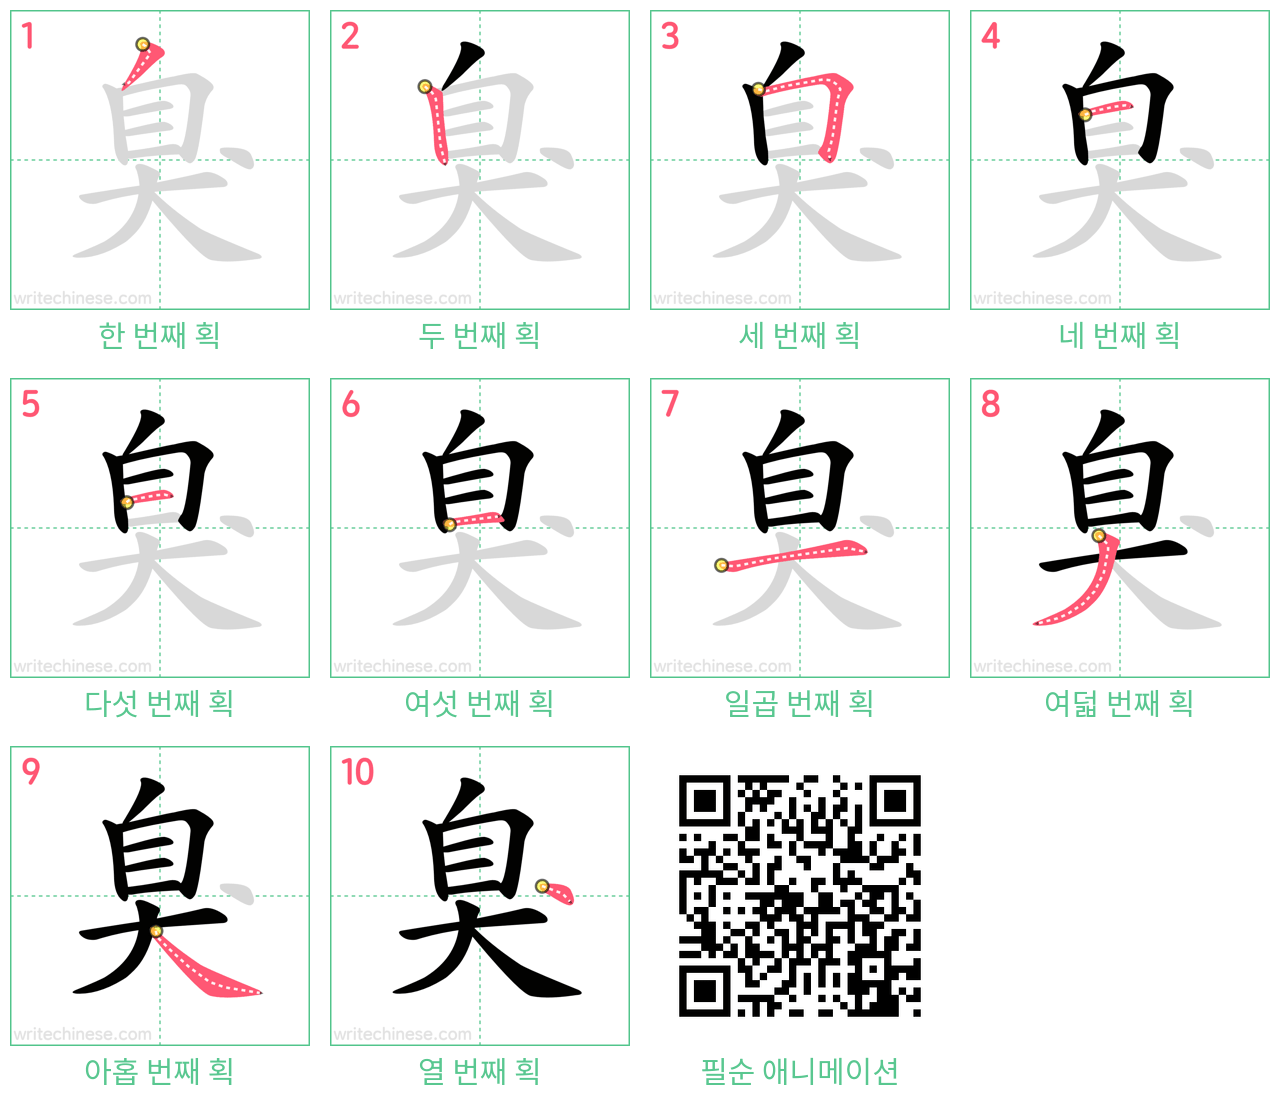 臭 step-by-step stroke order diagrams